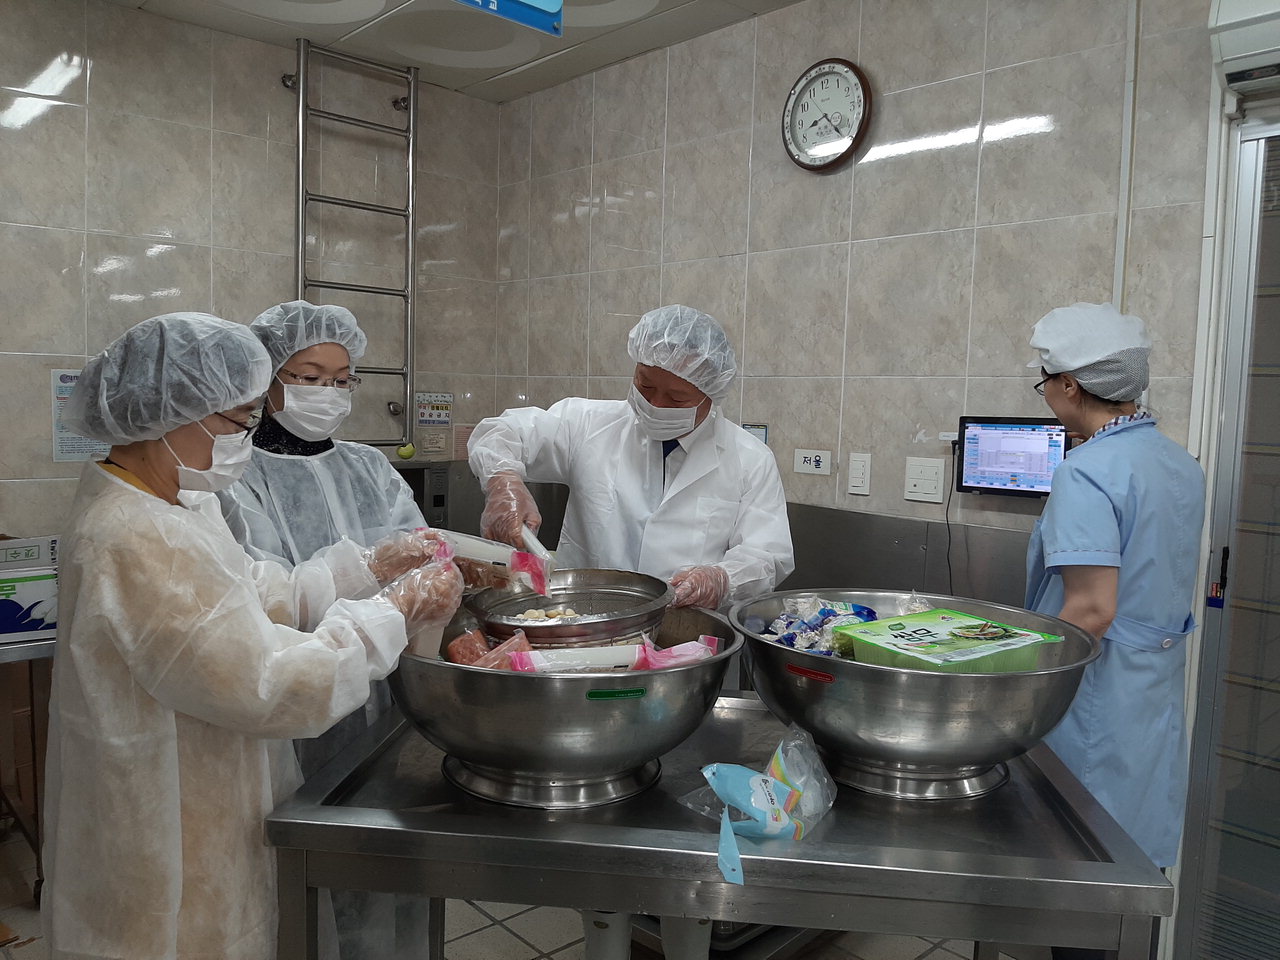 옥천교육지원청은 20일 장야초등학교 식생활관에서 식재료 검수과정과 급식시설 및 식재료 관리상태를 점검했다. / 옥천교육지원청 제공